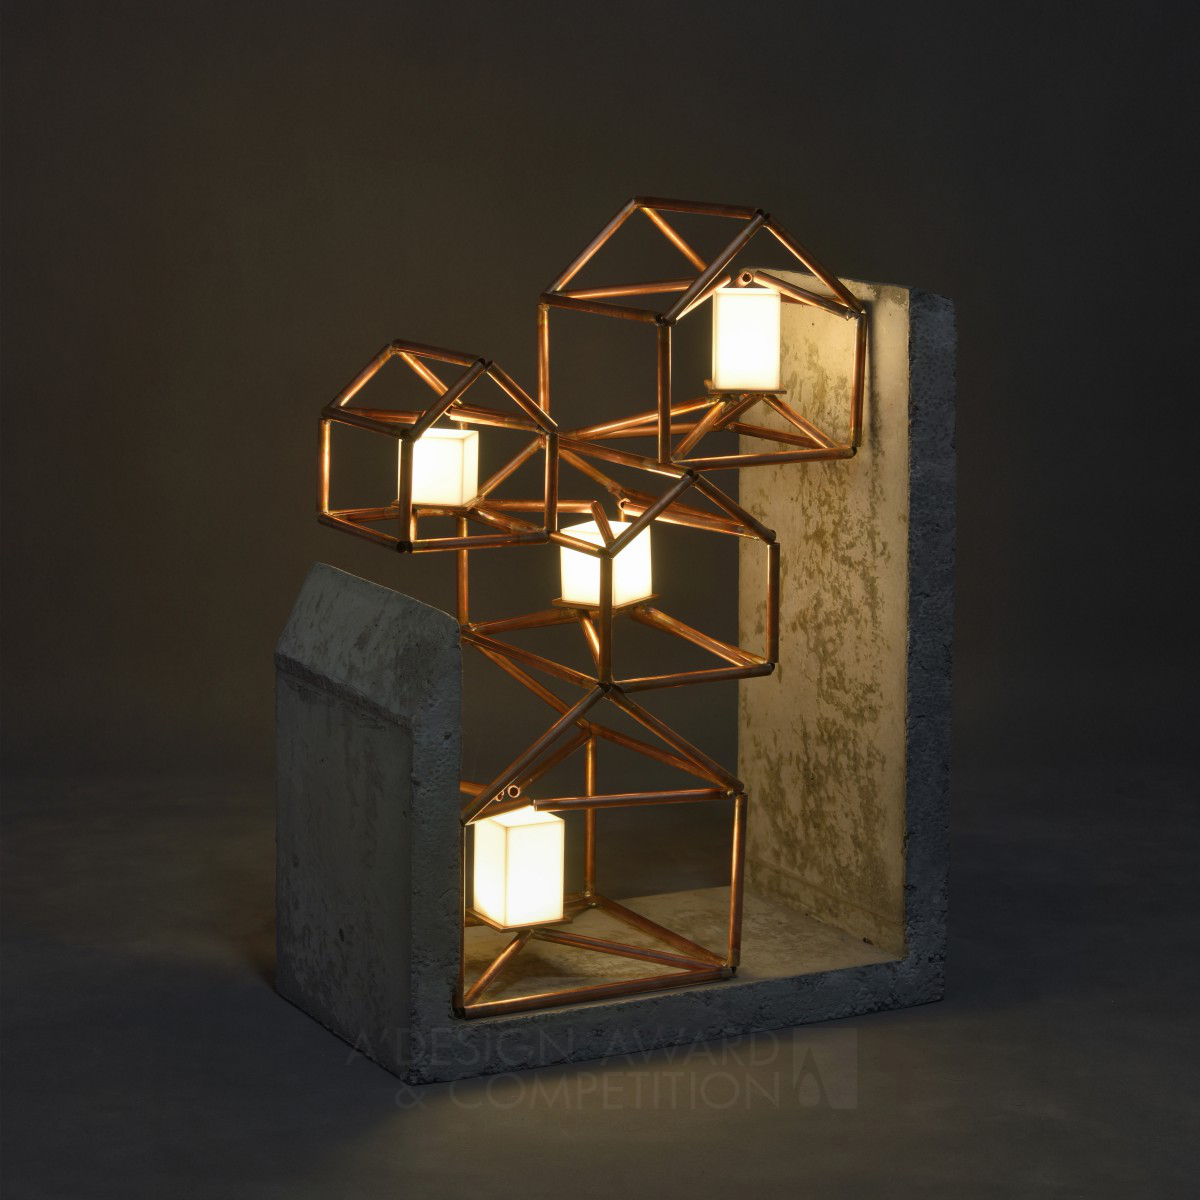 Nima Keivani's "The Home" Lamp